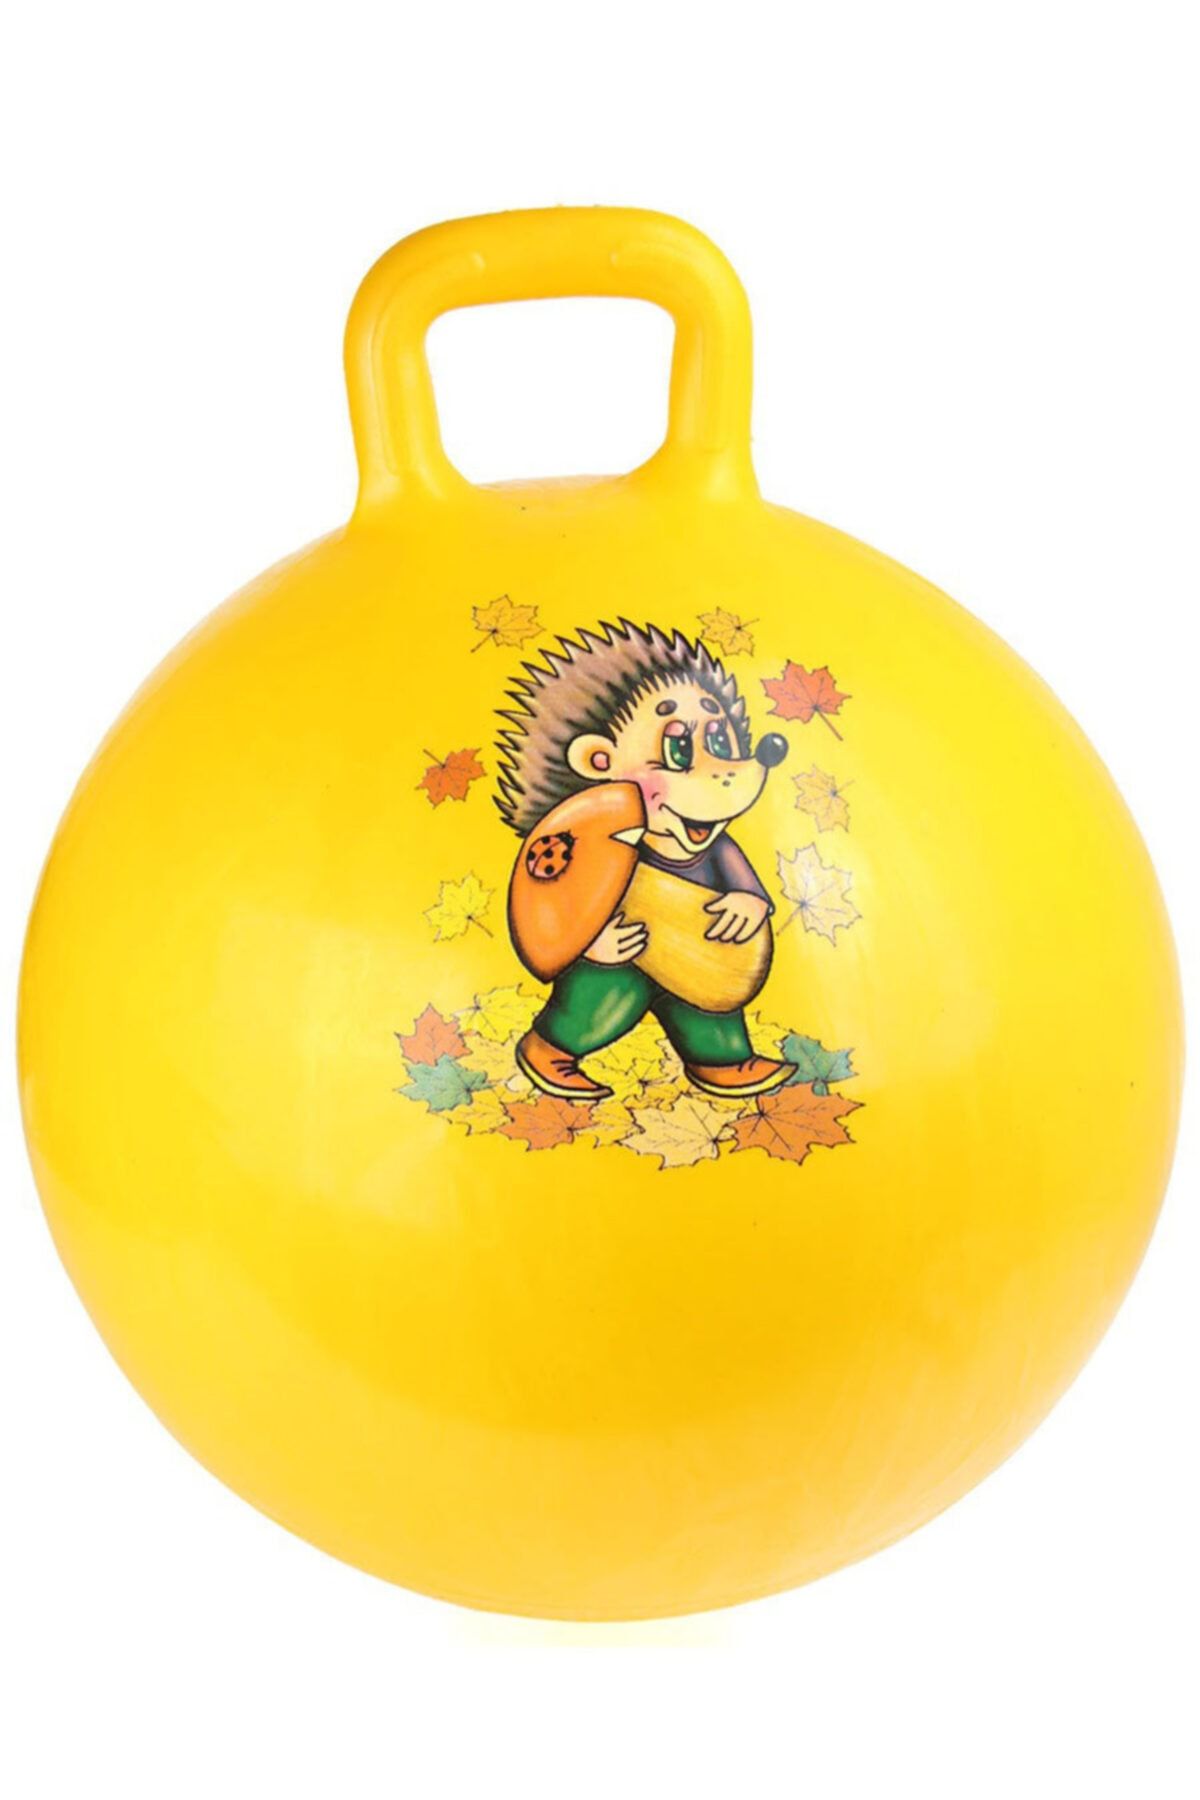 MOYASHOP Sarı Tutmalı Zıplayan Pilates Topu - Çocuk Oyun - Spor - 55 Cm , 450 gr .